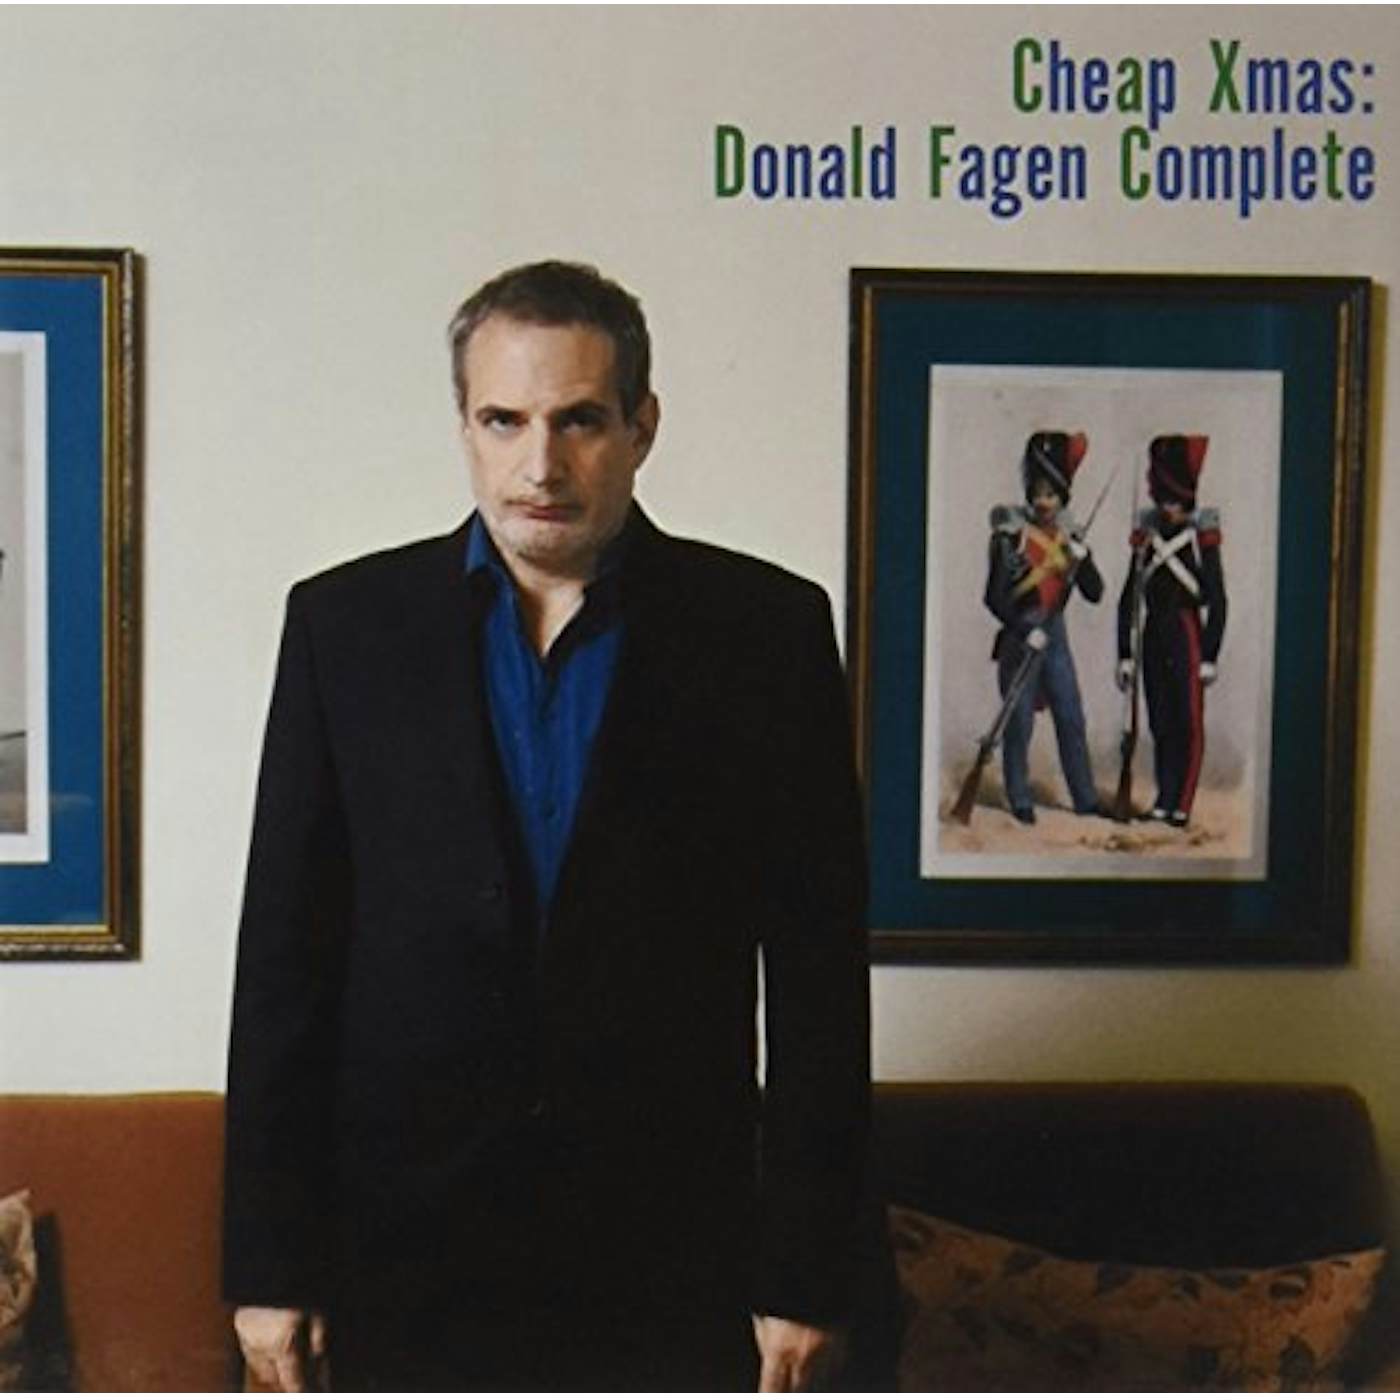 CHEAP XMAS: DONALD FAGEN COMPLETE CD